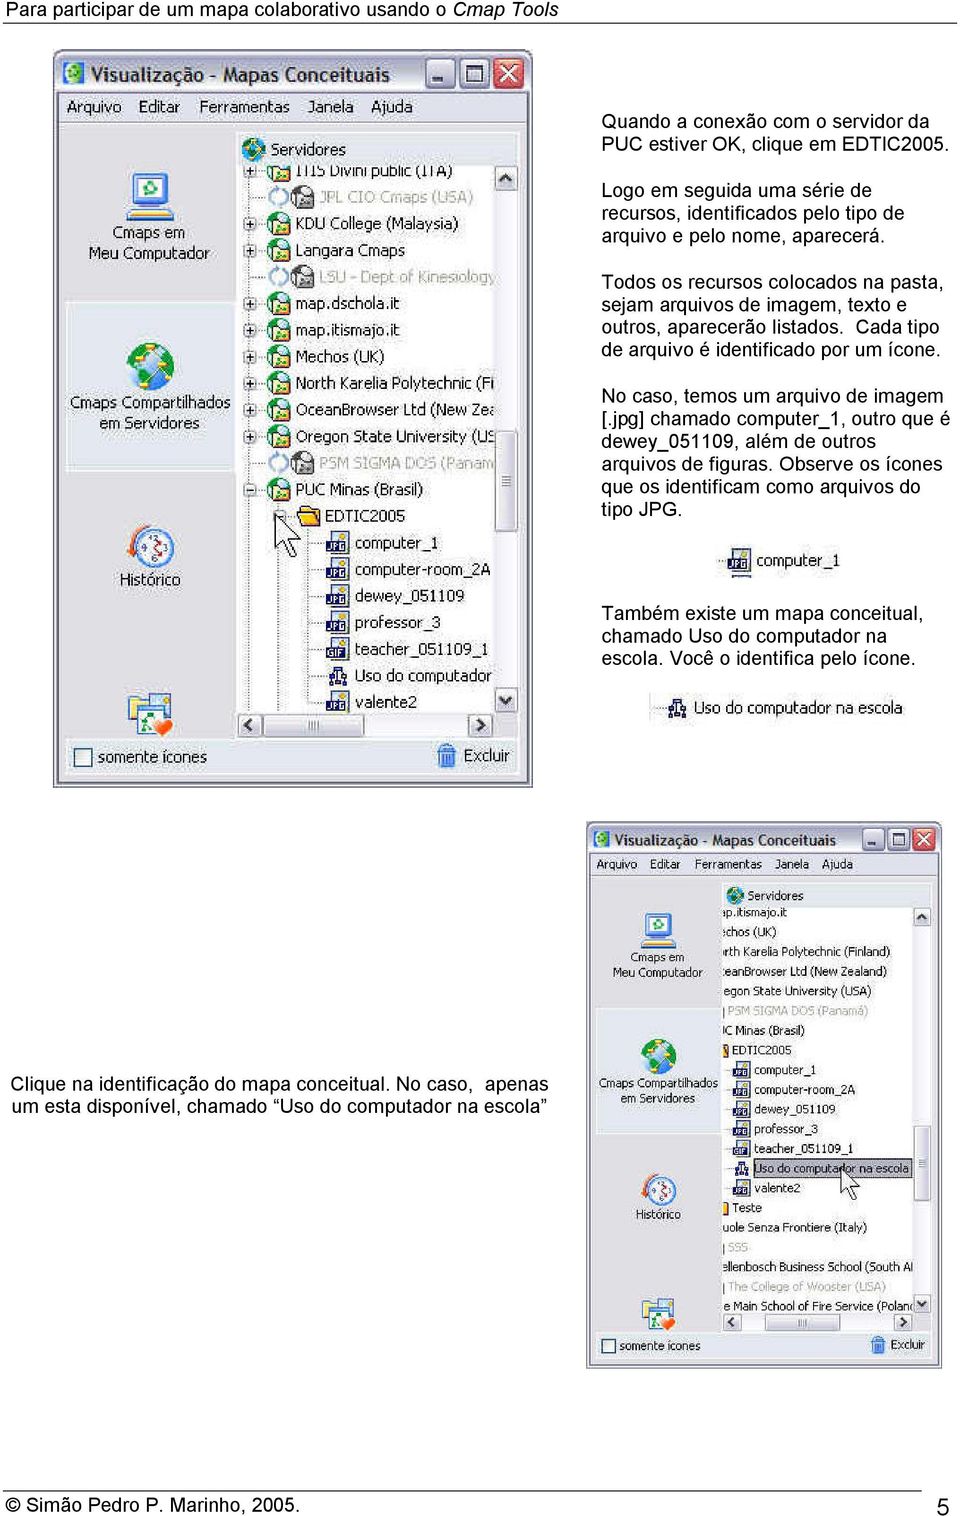 jpg] chamado computer_1, outro que é dewey_051109, além de outros arquivos de figuras. Observe os ícones que os identificam como arquivos do tipo JPG.